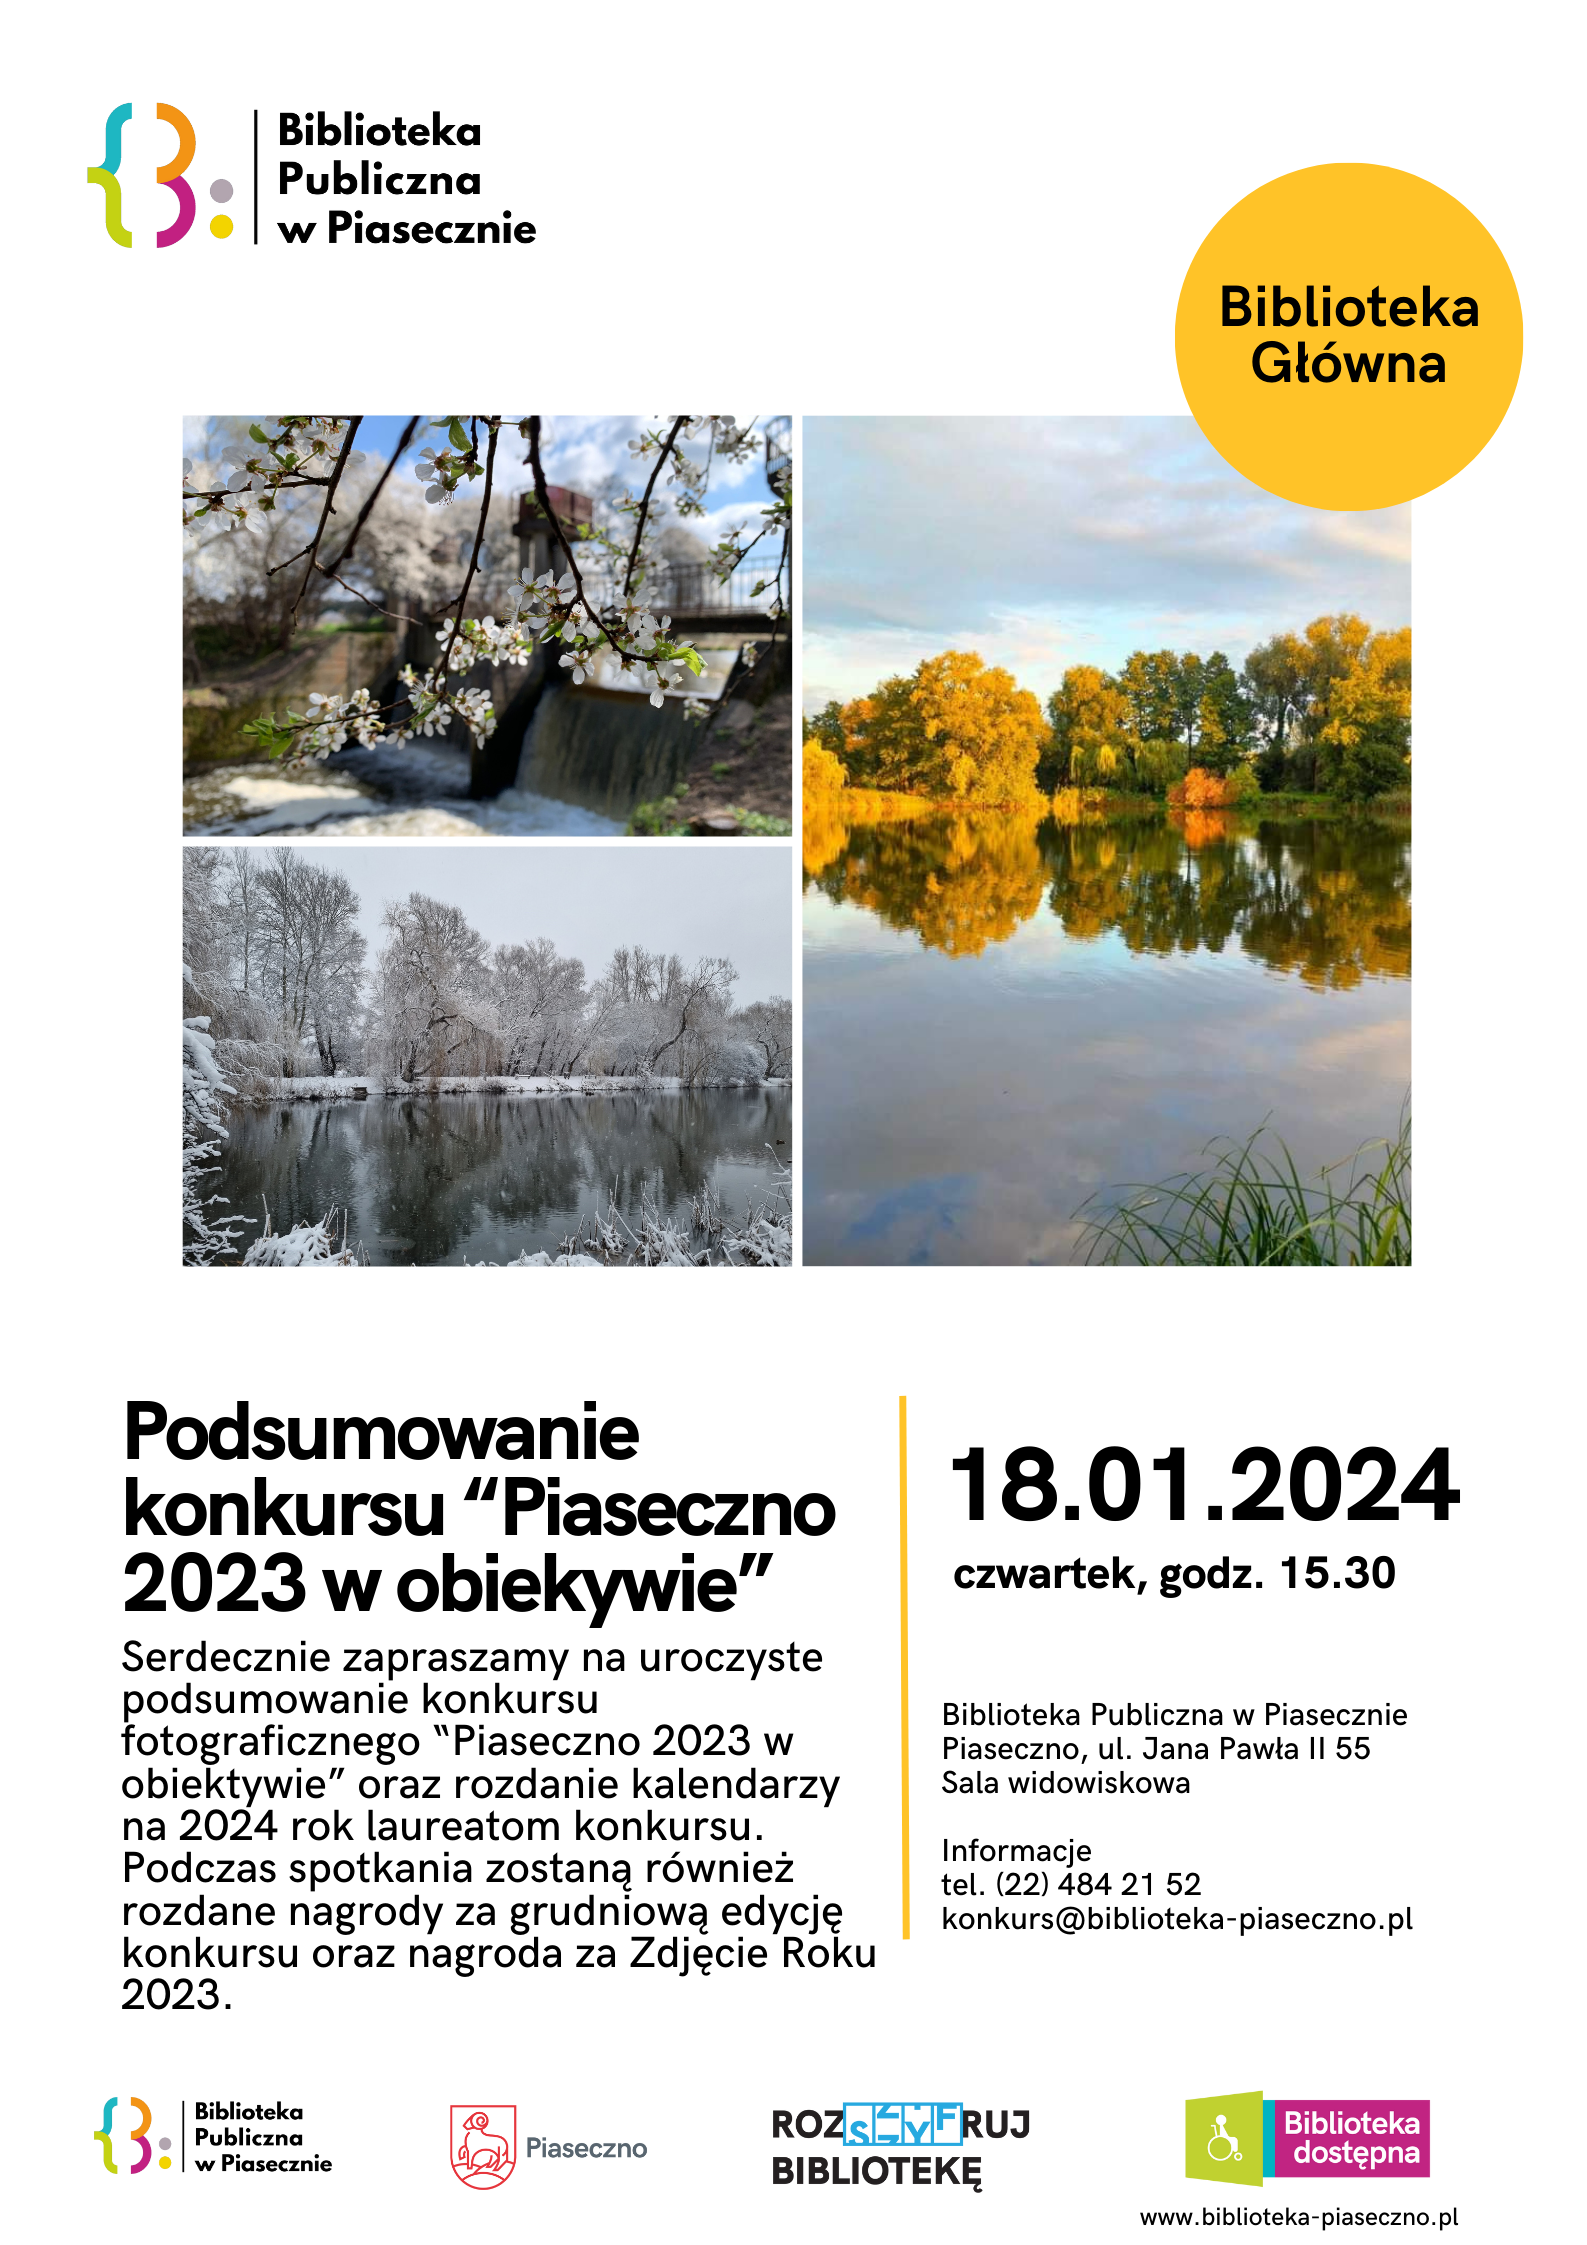 Plakat o podsumowaniu konkursu fotograficznego "Piaseczno 2023 w obiektywie" w Bibliotece Głównej